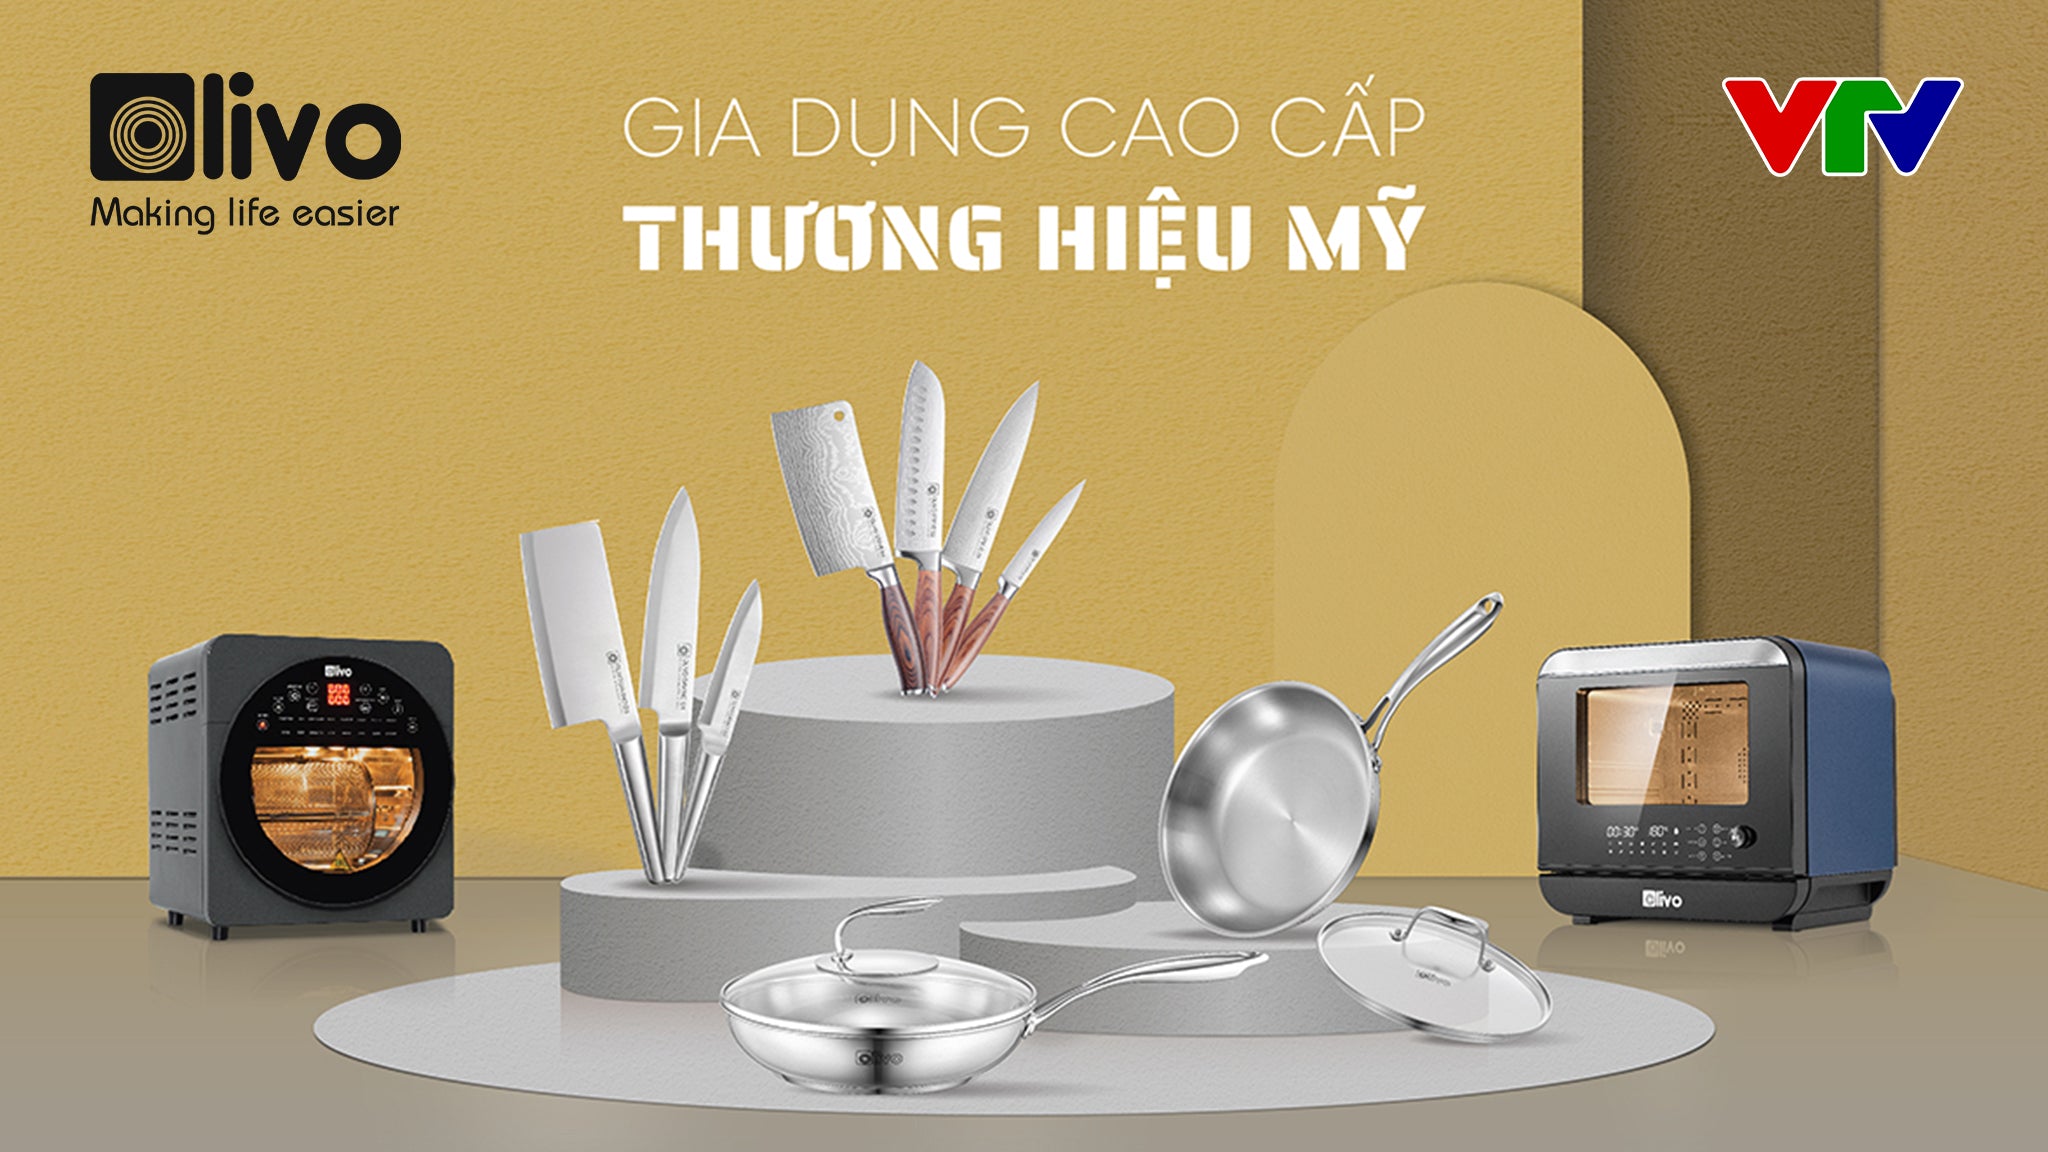 (Vtv.vn) Bộ dao, chảo OLIVO cao cấp lần đầu ra mắt thị trường gia dụng Việt